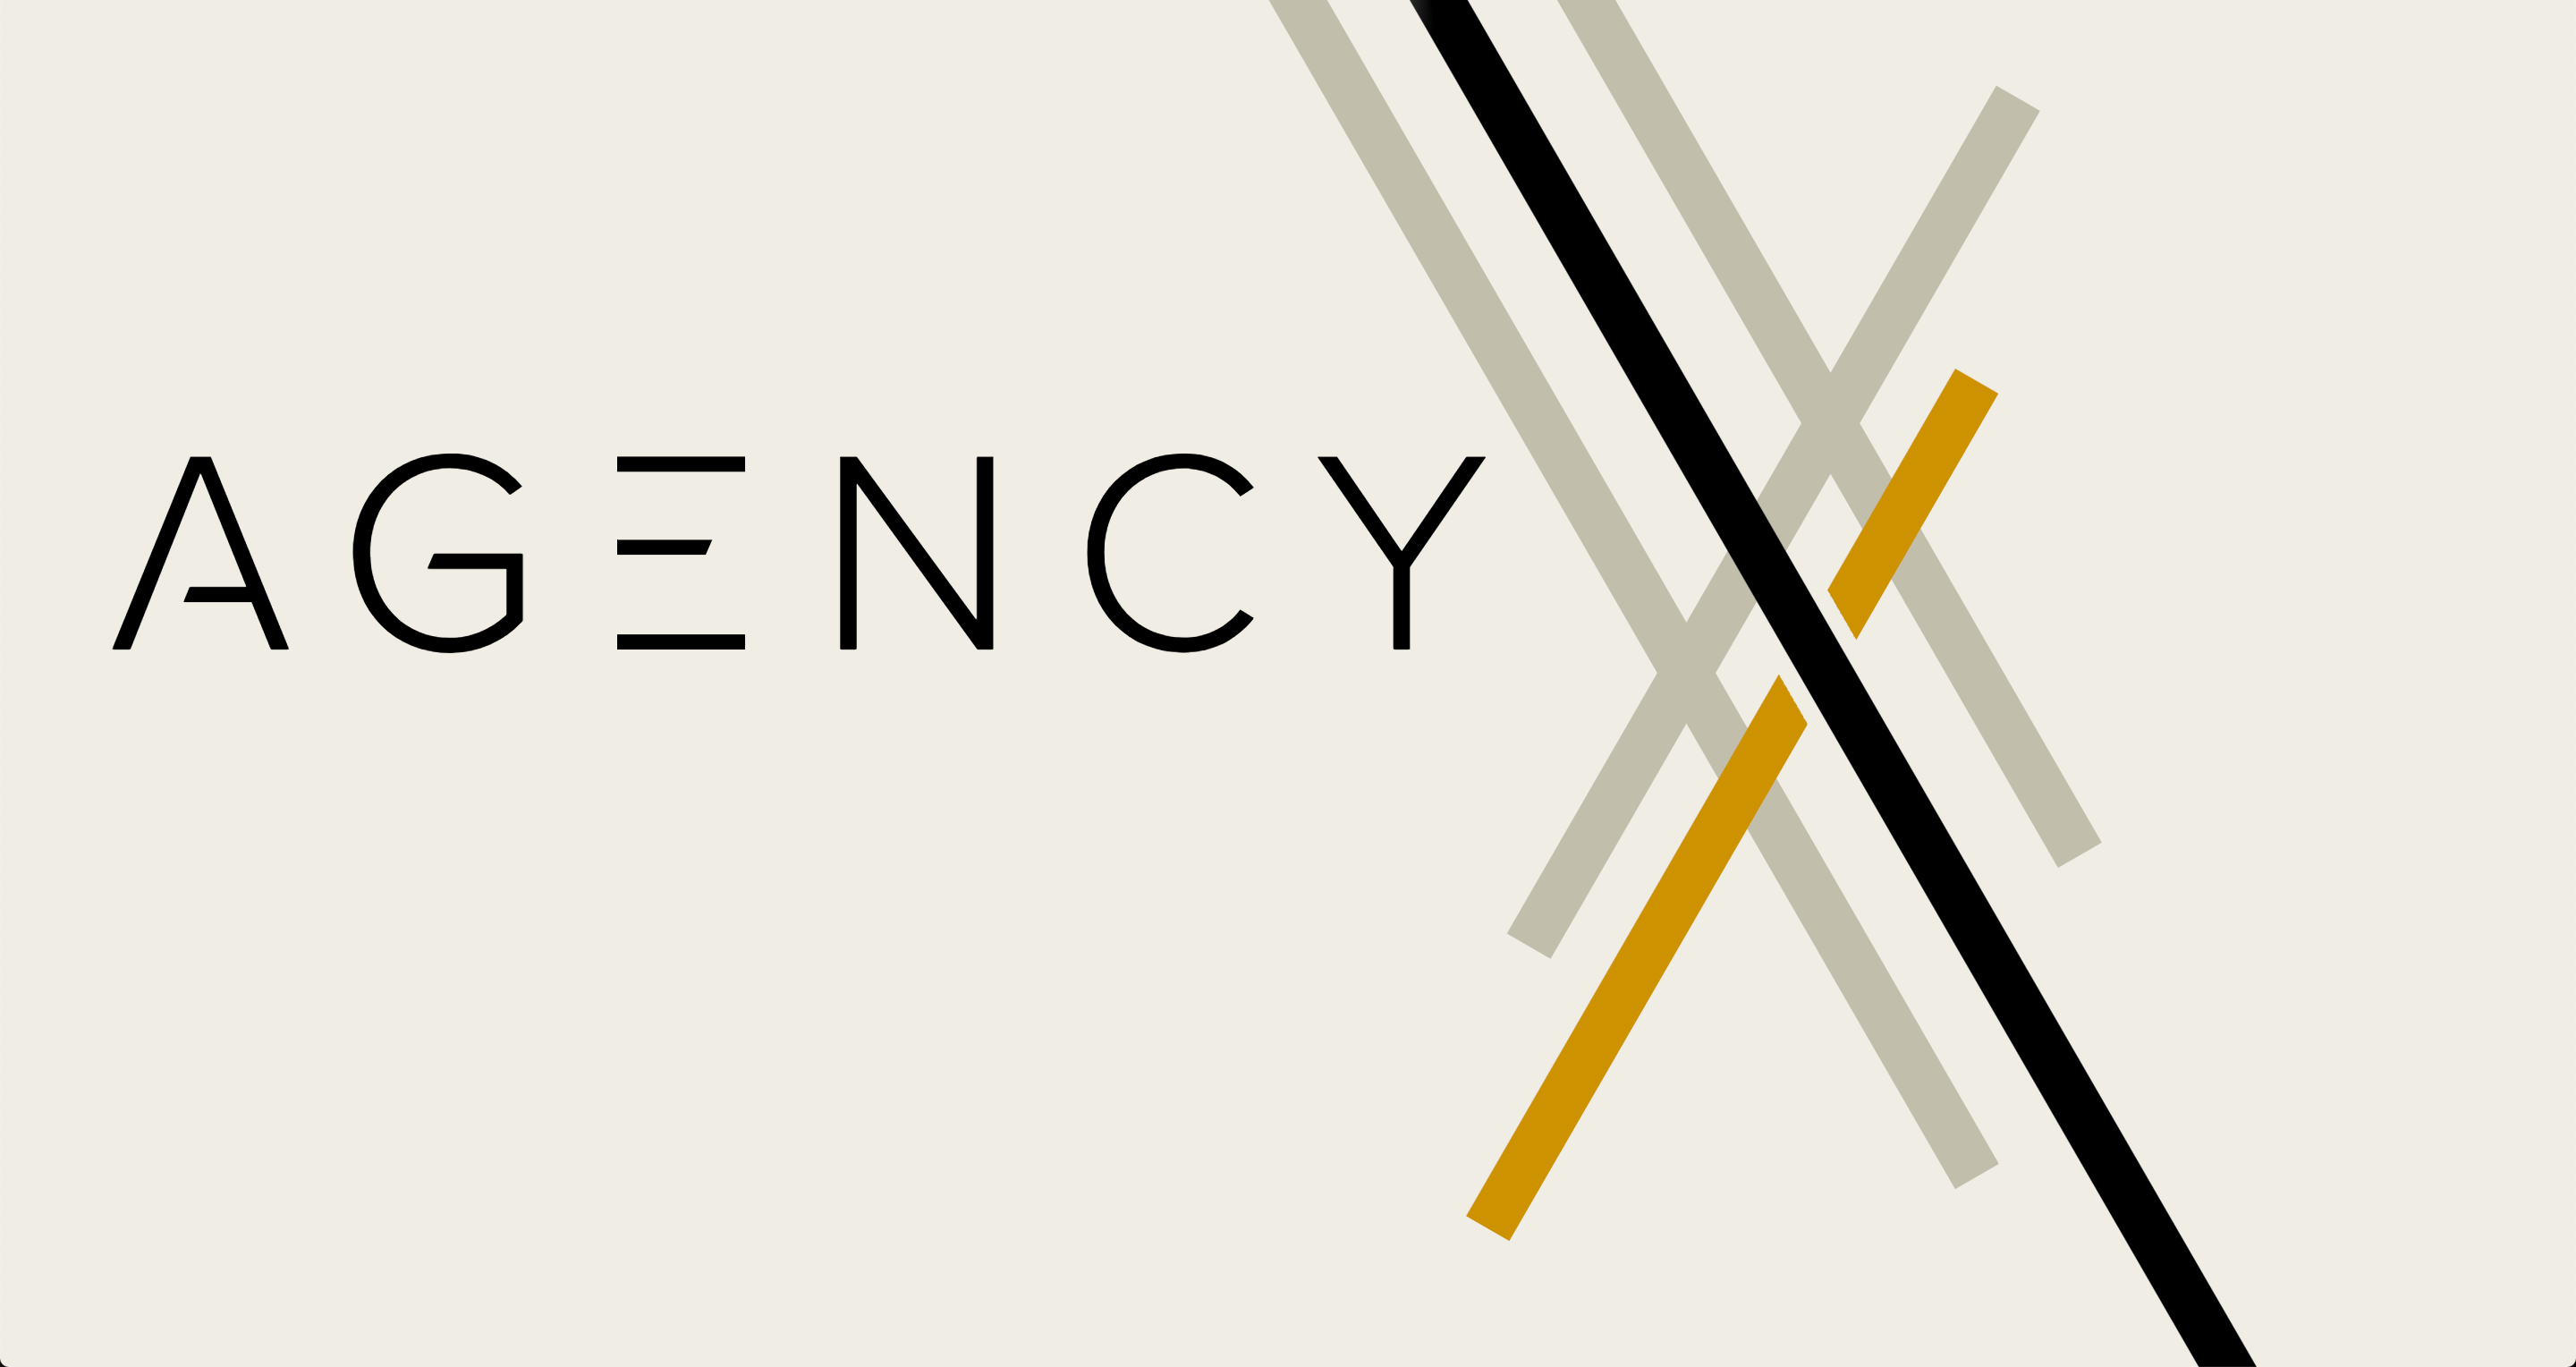 agency là gì